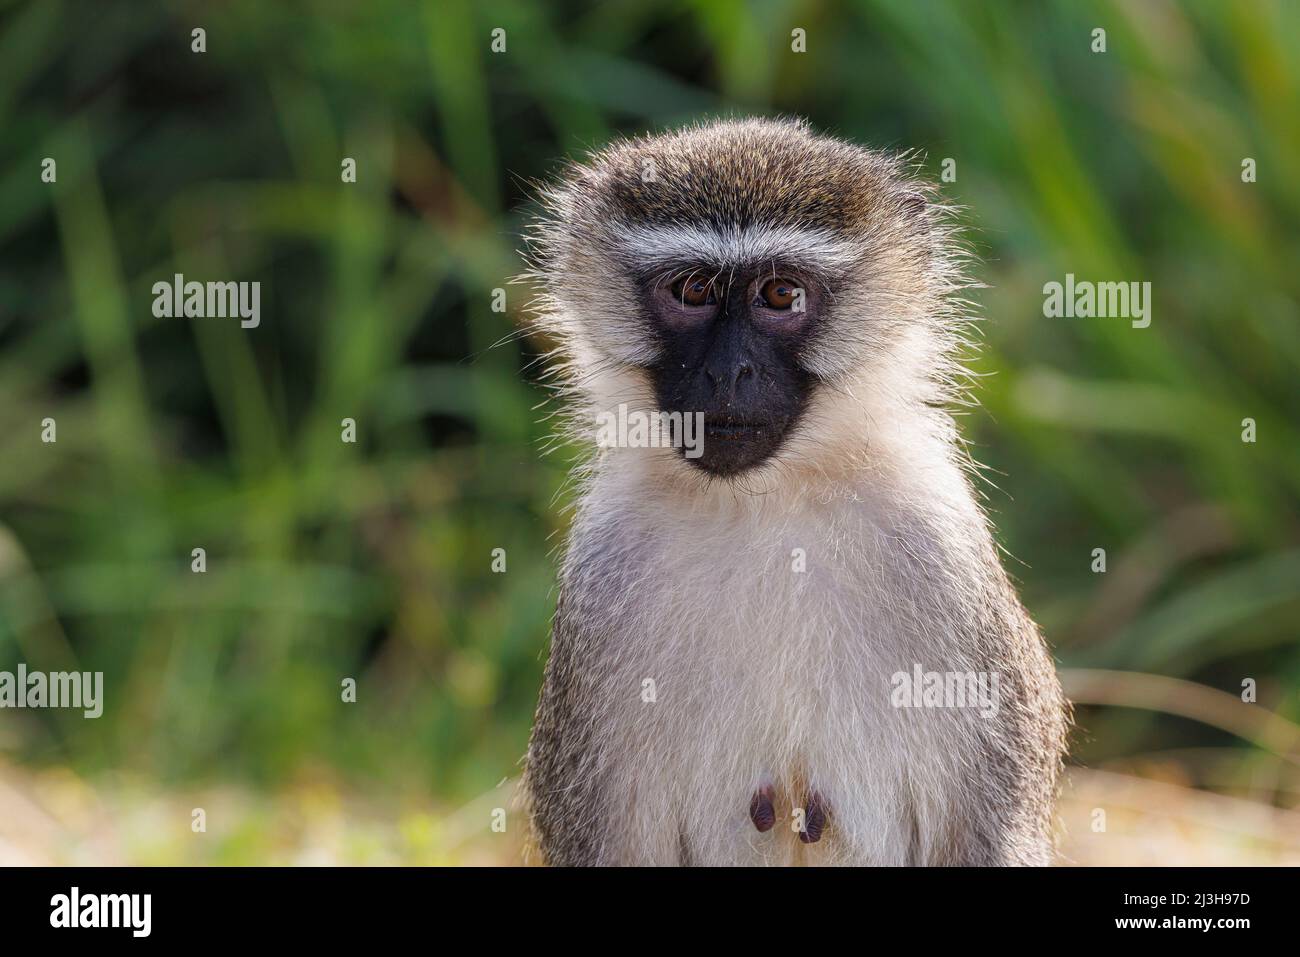 Uganda, Rubirizi district, Katunguru, Queen Elizabeth National Park, vervet monkey Stock Photo